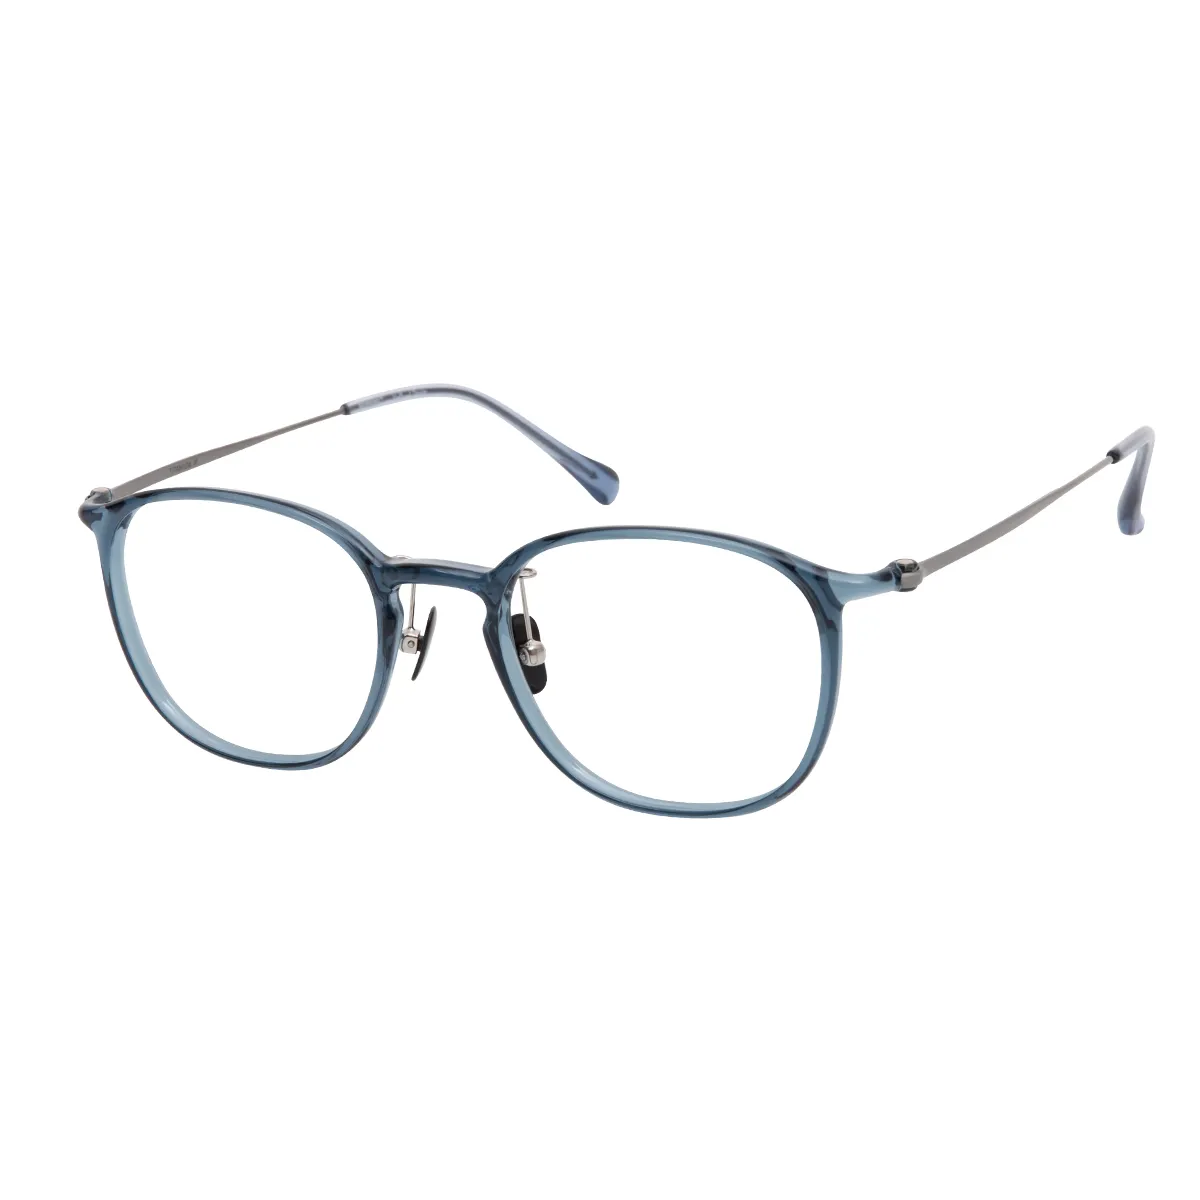 Sloane - Rectangle Blue Glasses for Men & Women